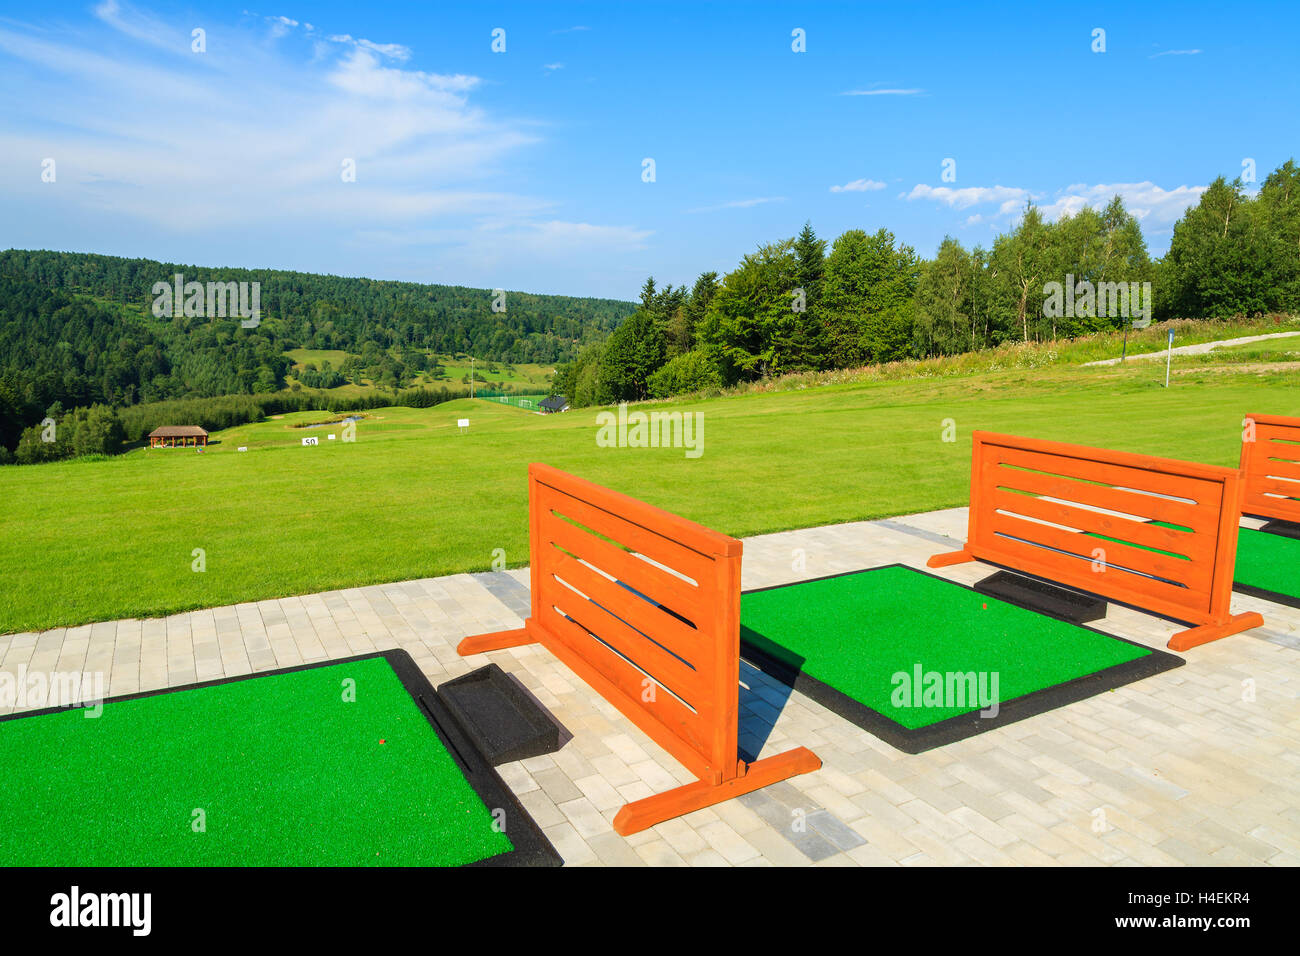 ARLAMOW GOLF COURSE, Polen - 3. August 2014: schöne Golf Spielplatz an sonnigen Sommertag in Arlamow Hotel. Das Luxushotel wurde Polens Regierung Besitz und befindet sich im Bieszczady-Gebirge. Stockfoto